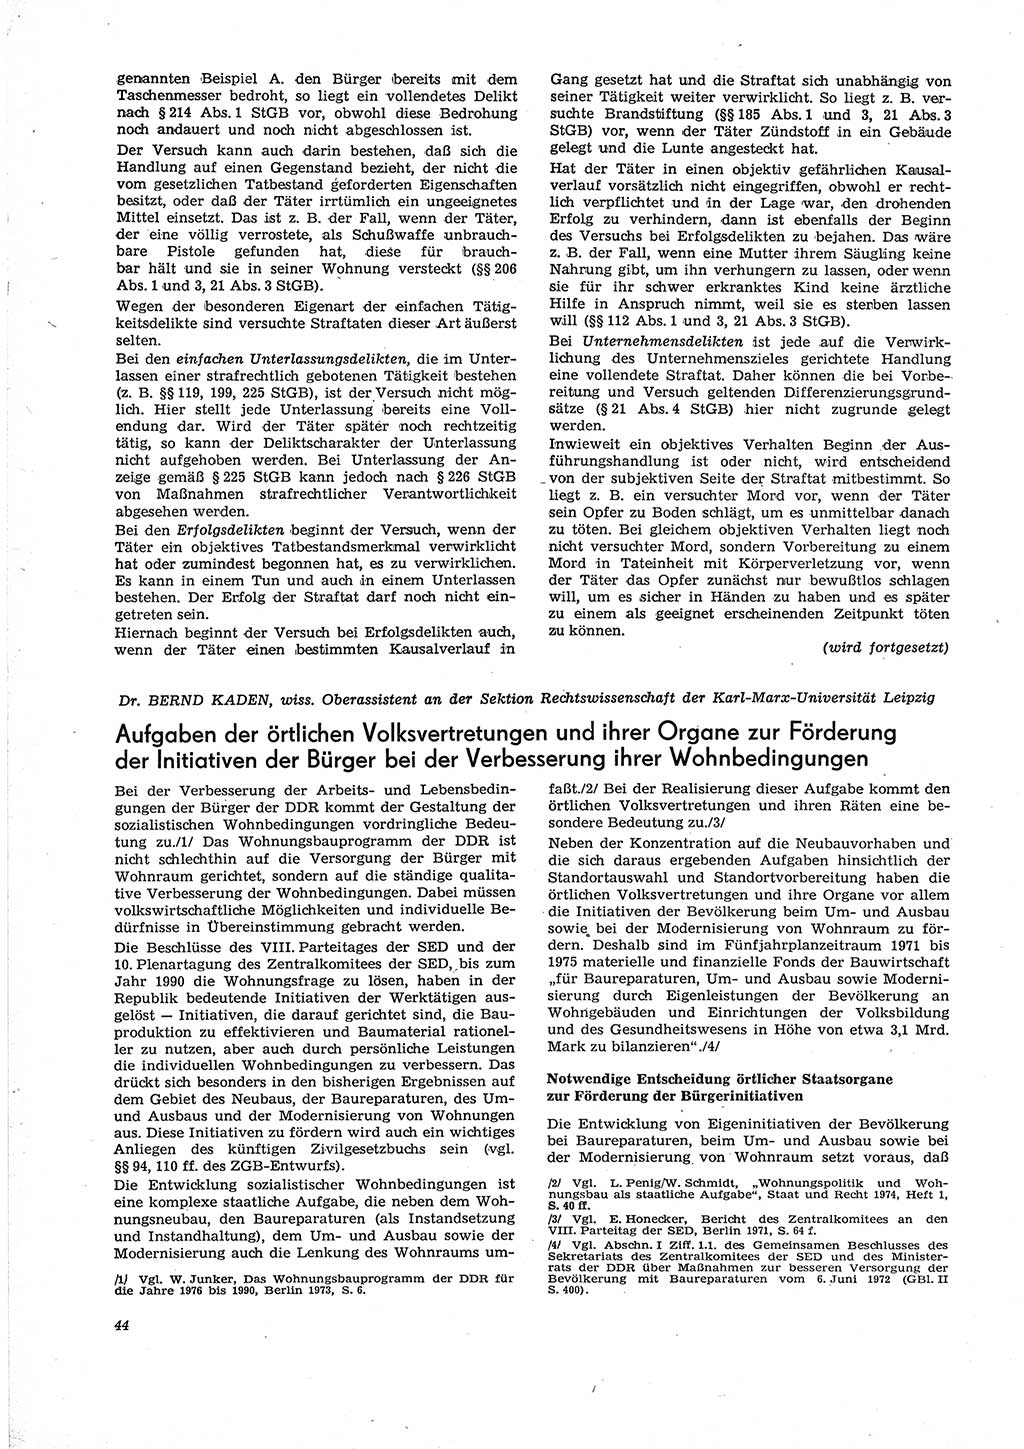 Neue Justiz (NJ), Zeitschrift für Recht und Rechtswissenschaft [Deutsche Demokratische Republik (DDR)], 29. Jahrgang 1975, Seite 44 (NJ DDR 1975, S. 44)